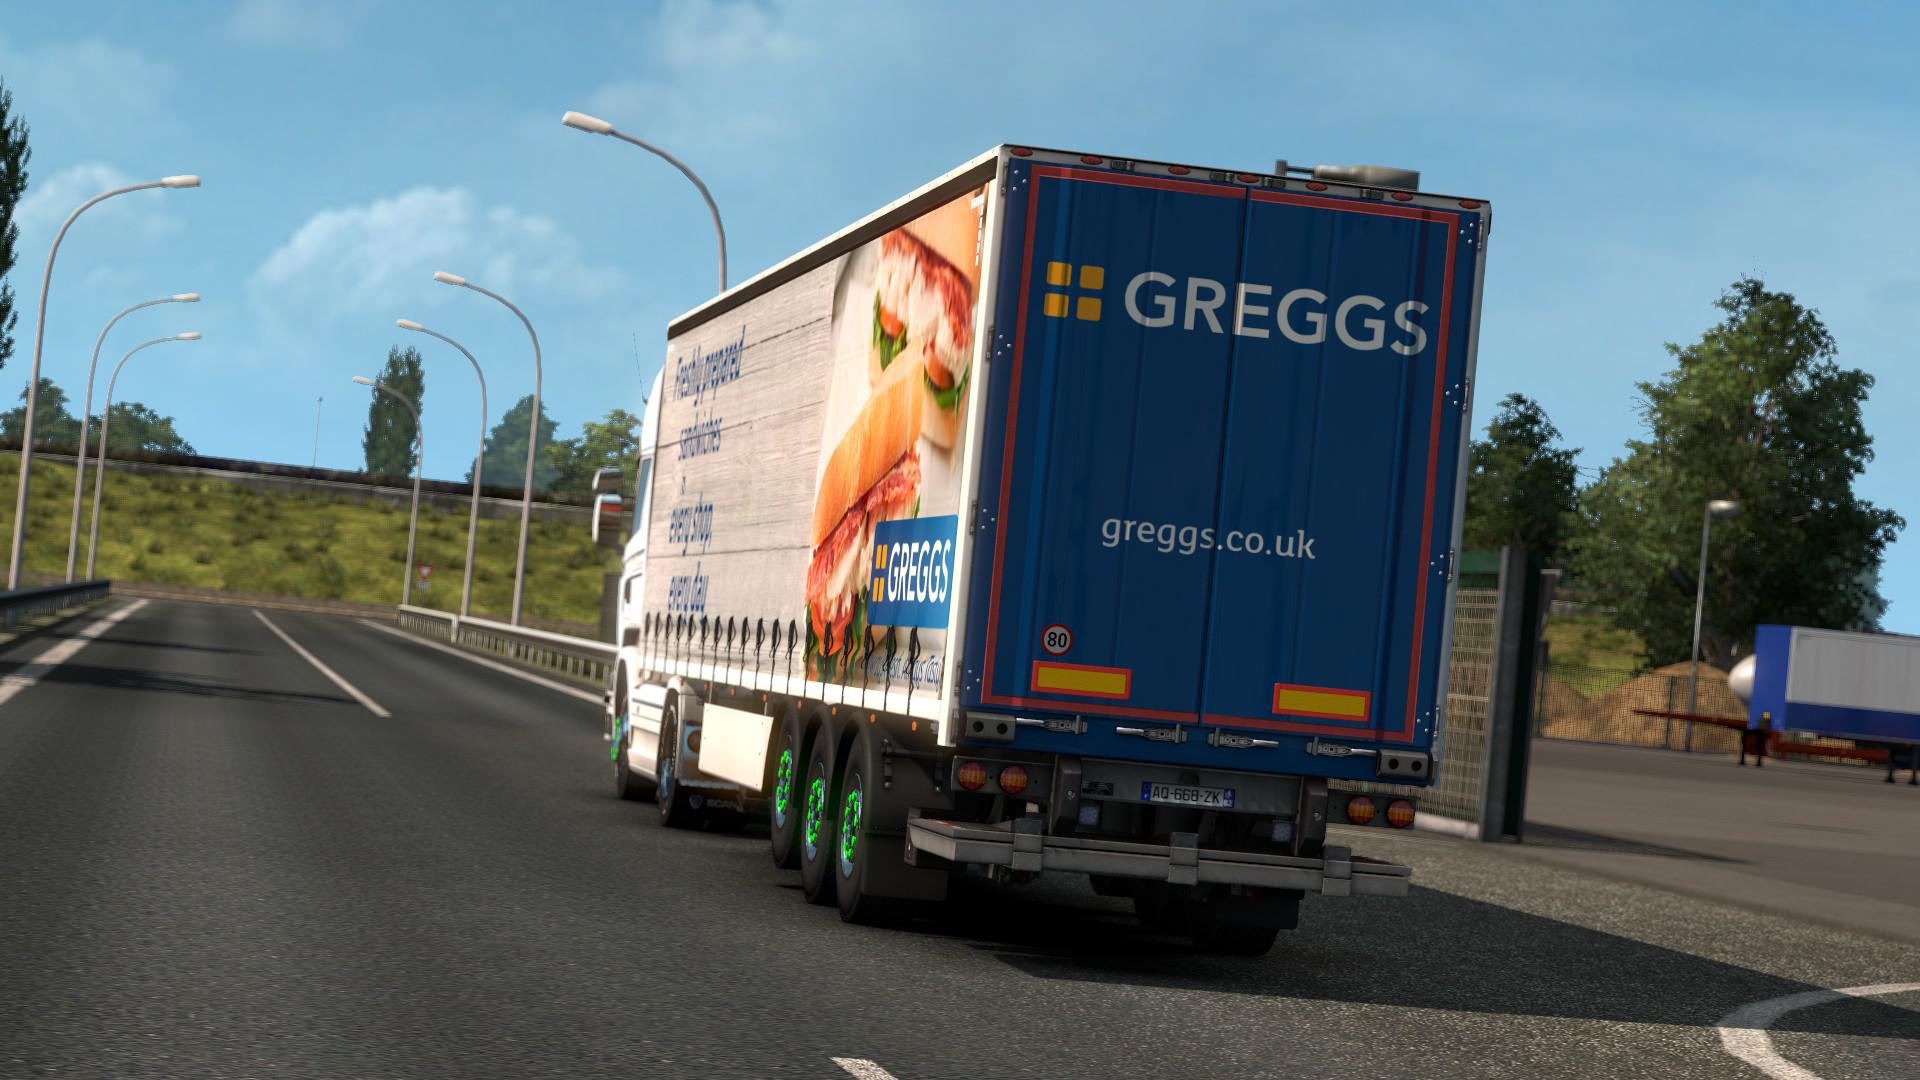 Greggs Truck & Trailer Livery Pack v 1.0